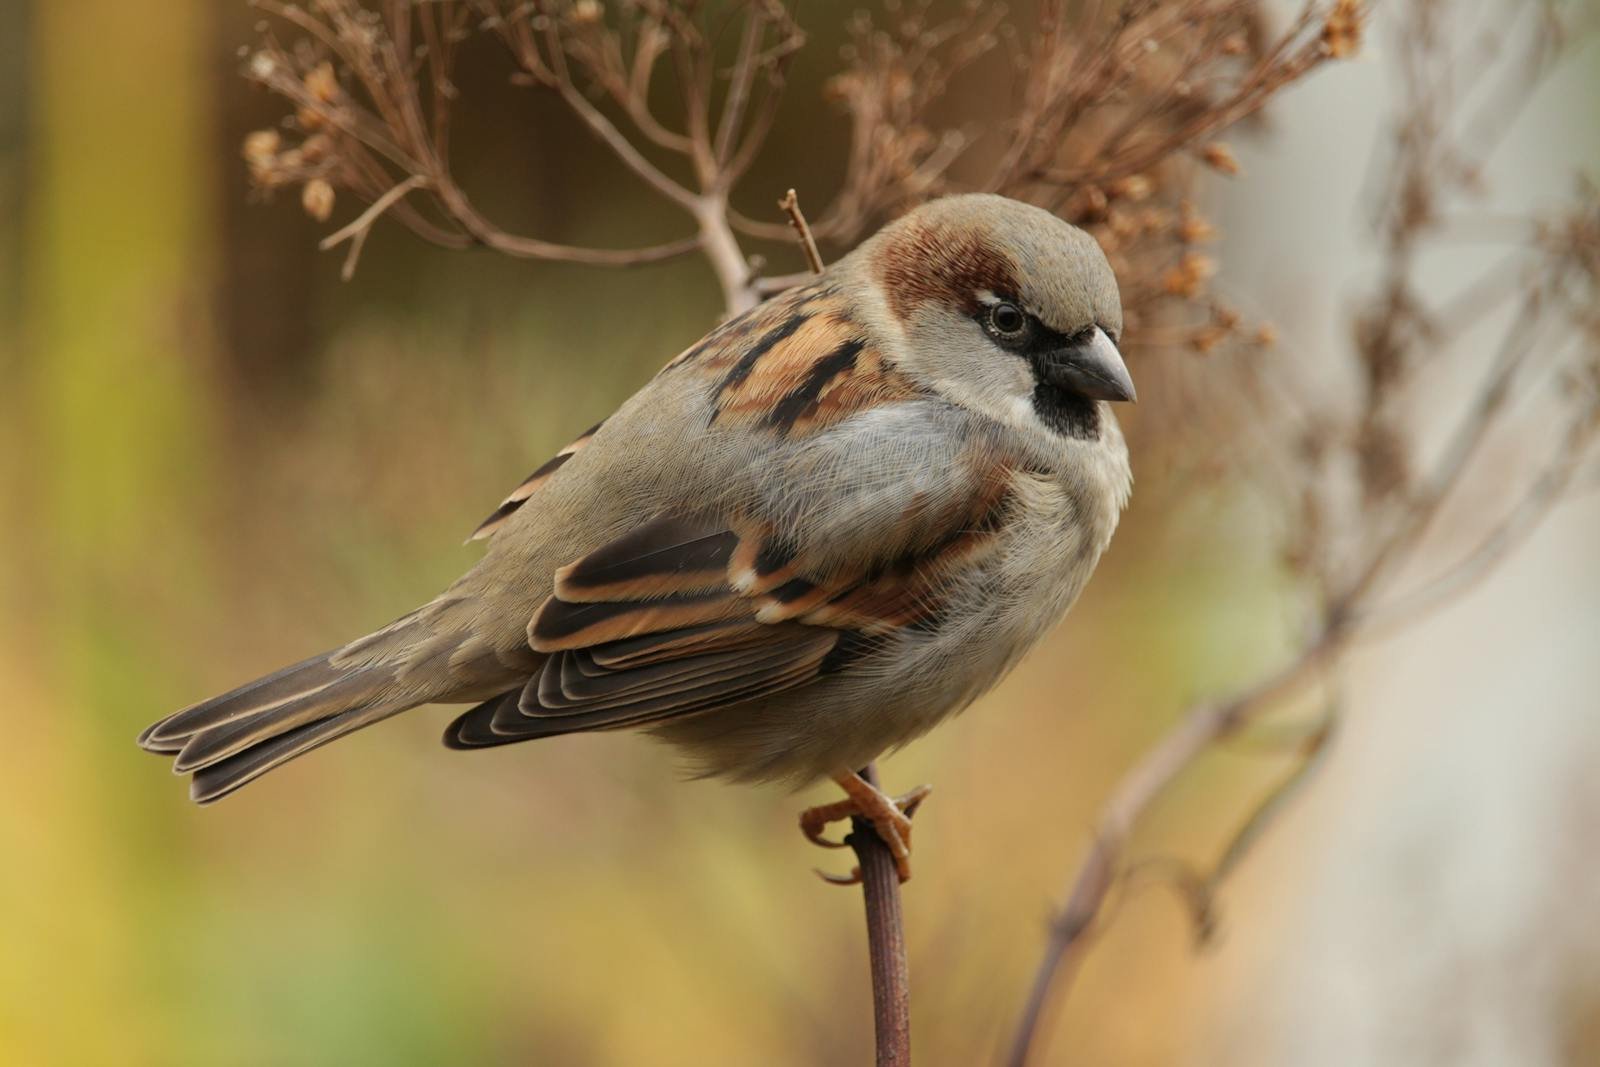 Sparrow Bird Close-up Photography